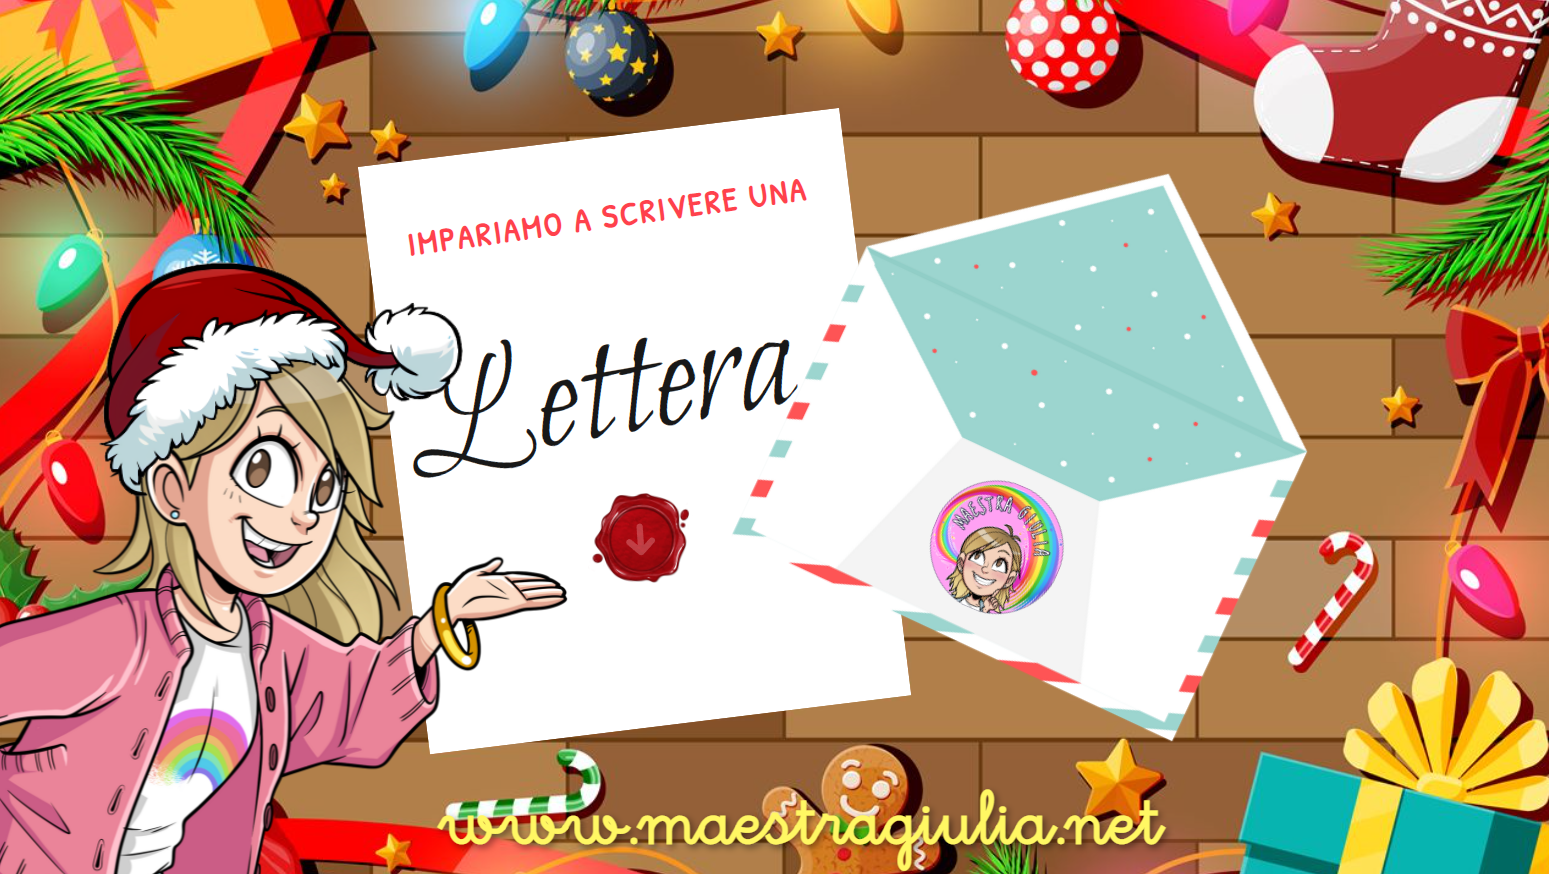 [Percorso didattico] La lettera alla scuola primaria: impariamo a scrivere una lettera a Babbo Natale